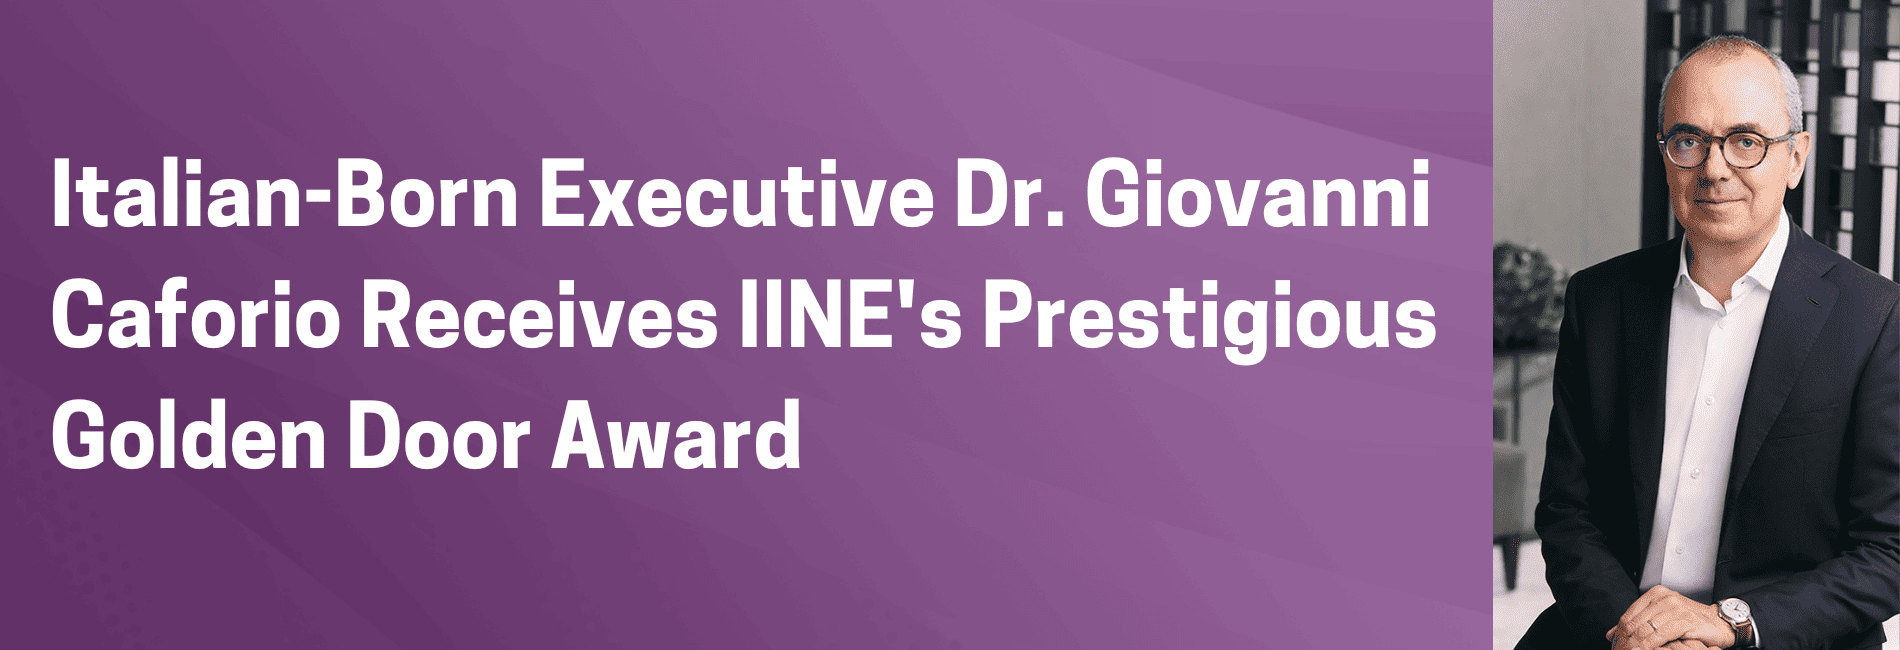 Italian-Born Executive Dr. Giovanni Caforio Receives IINE's Prestigious Golden Door Award